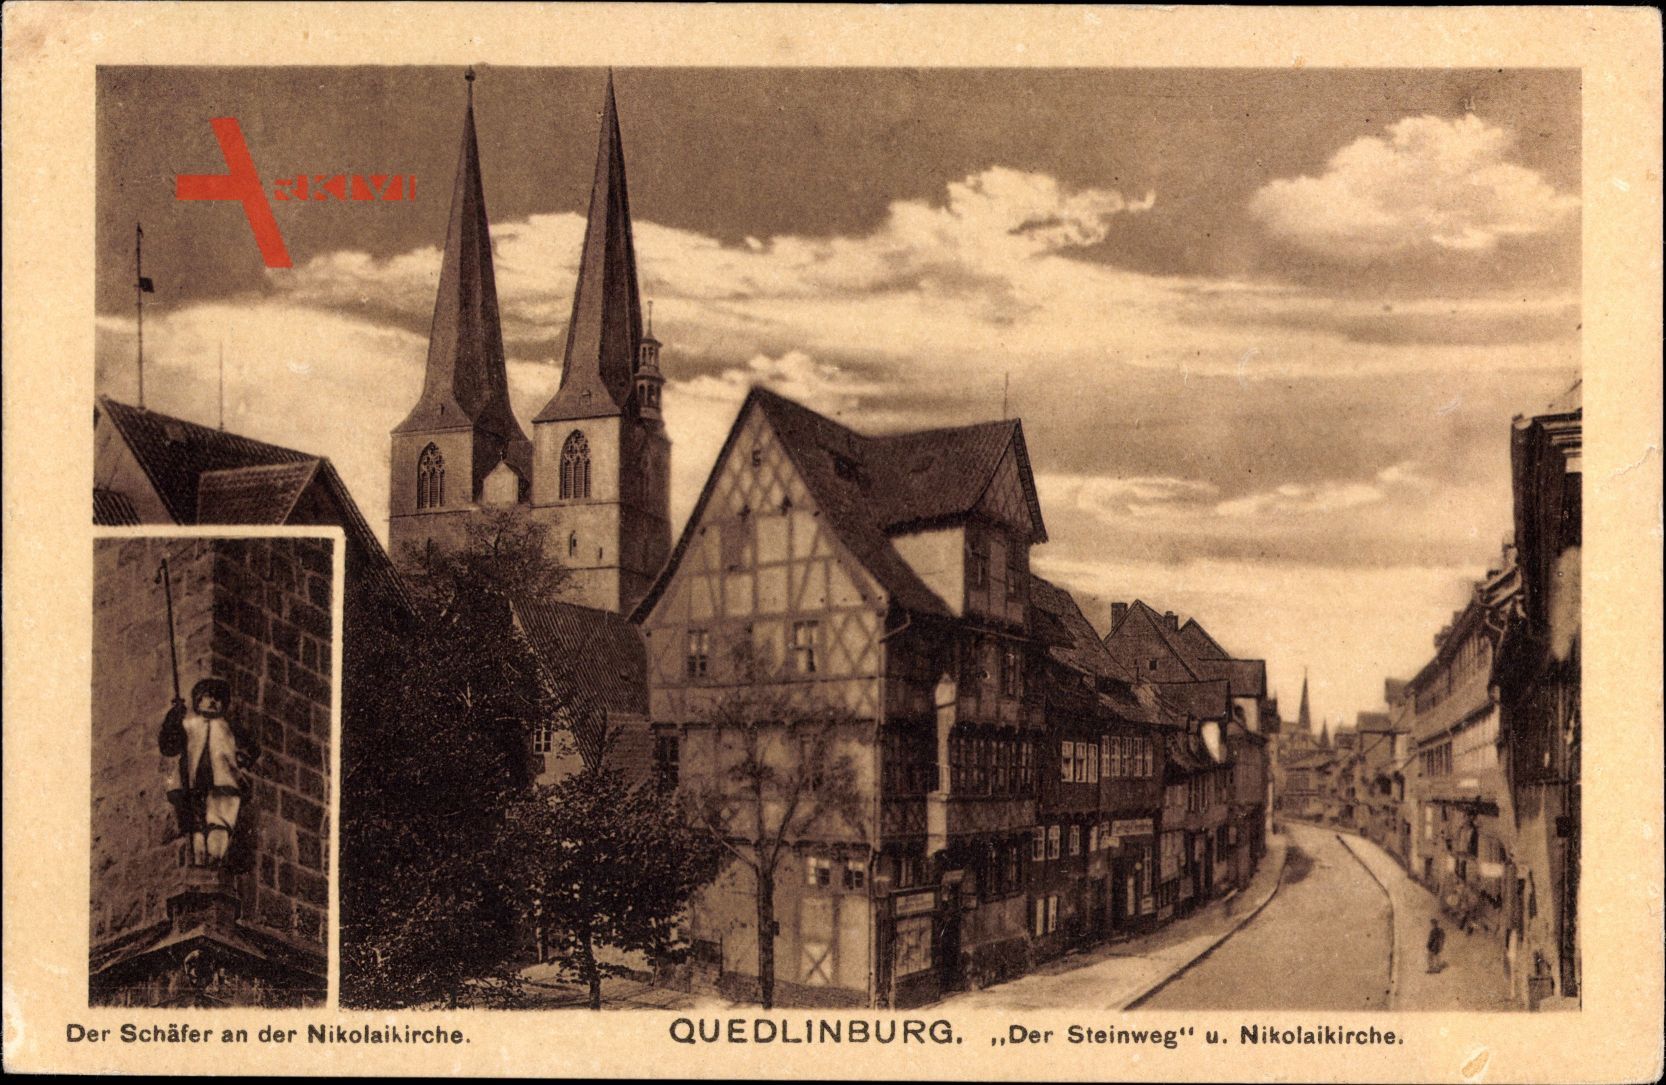 Quedlinburg im Harz, Der Steinweg und Nikolaikirche, Der Schäfer